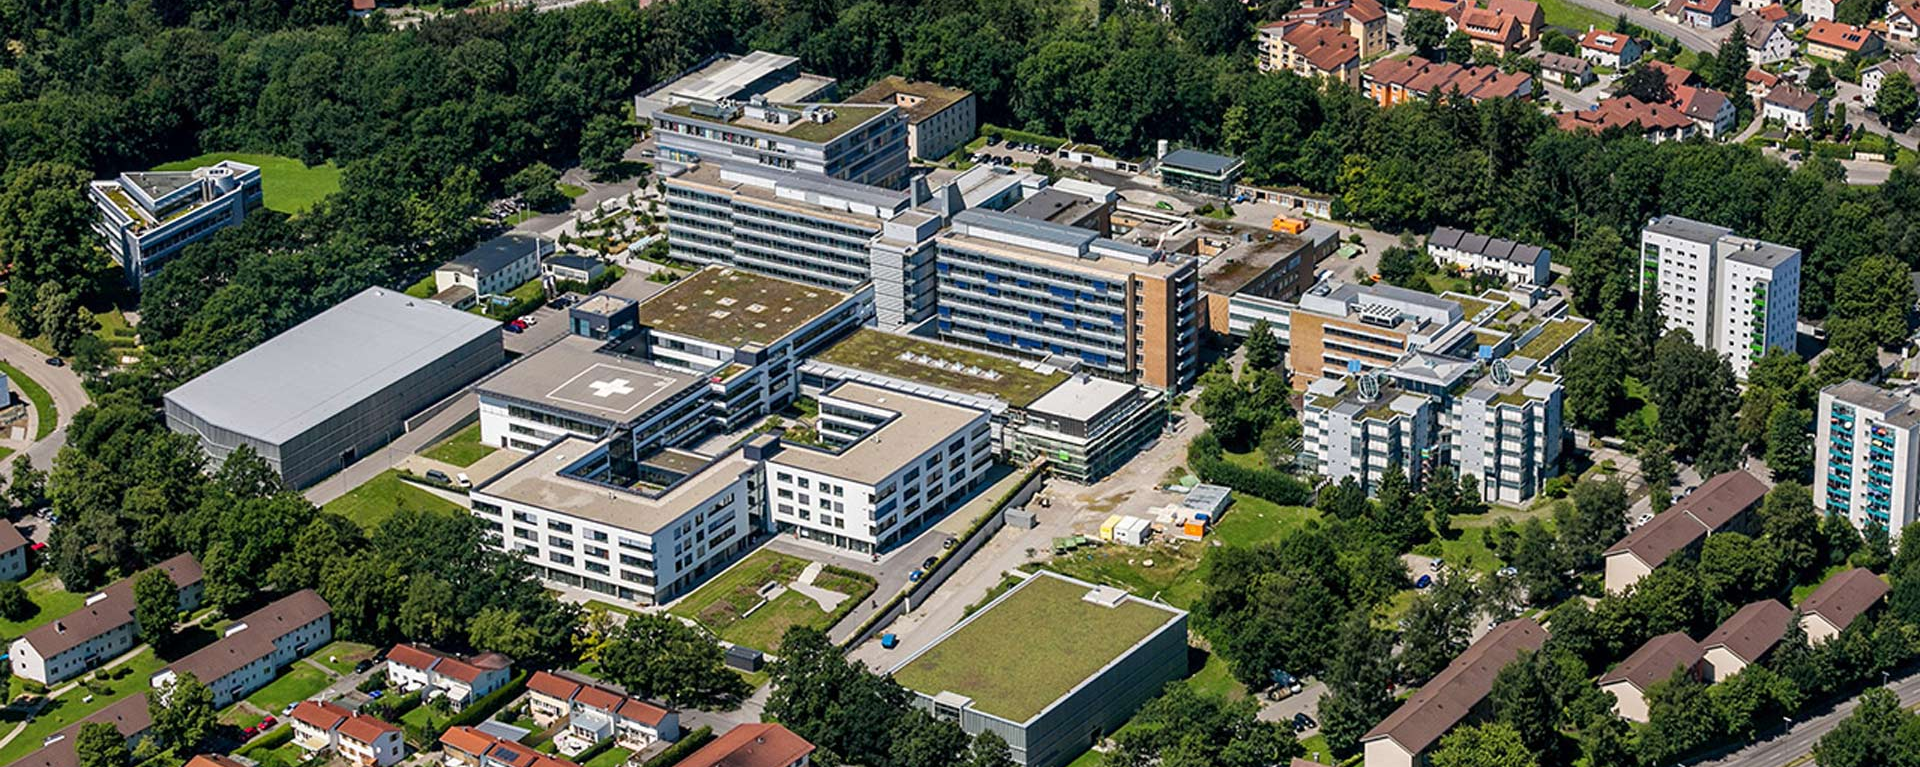 Luftbildaufnahme des Klinikum Kempten